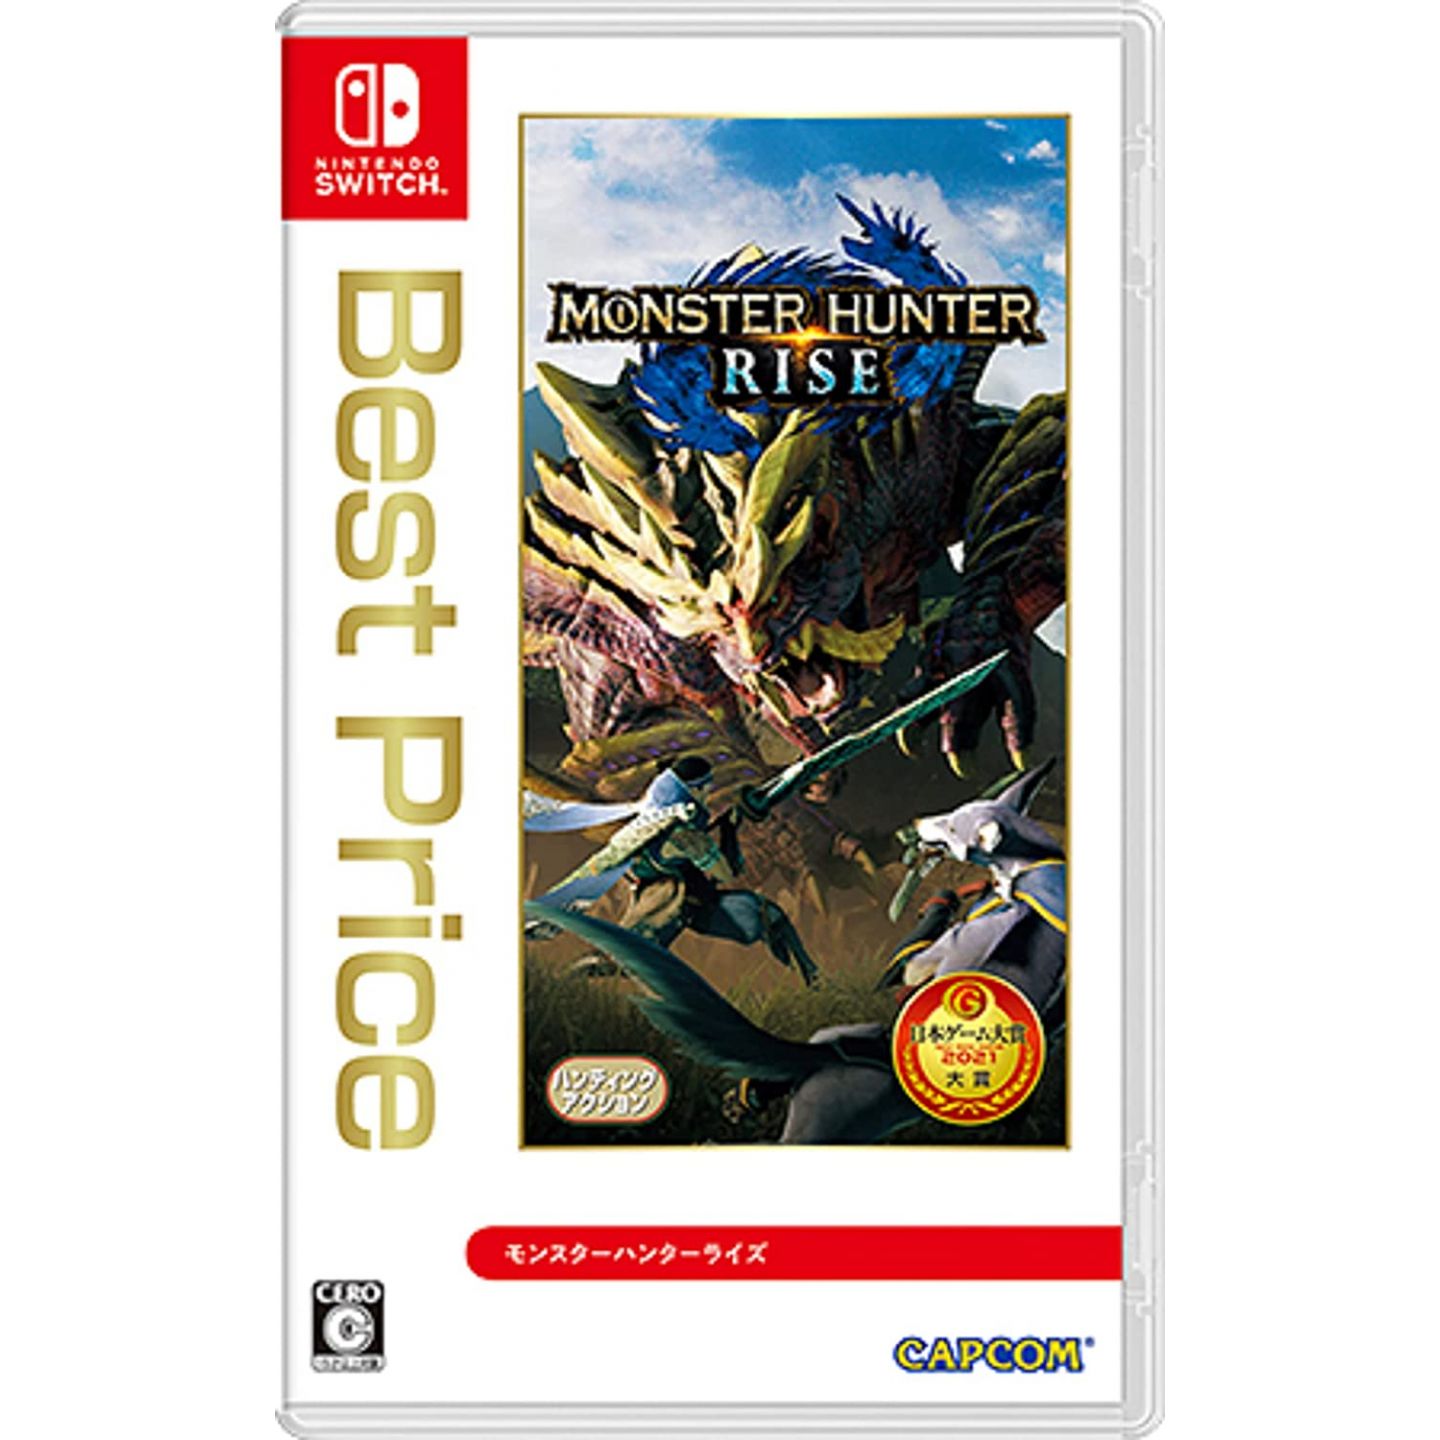 Monster - Rise Hunter Switch Price) Nintendo for CAPCOM (Best